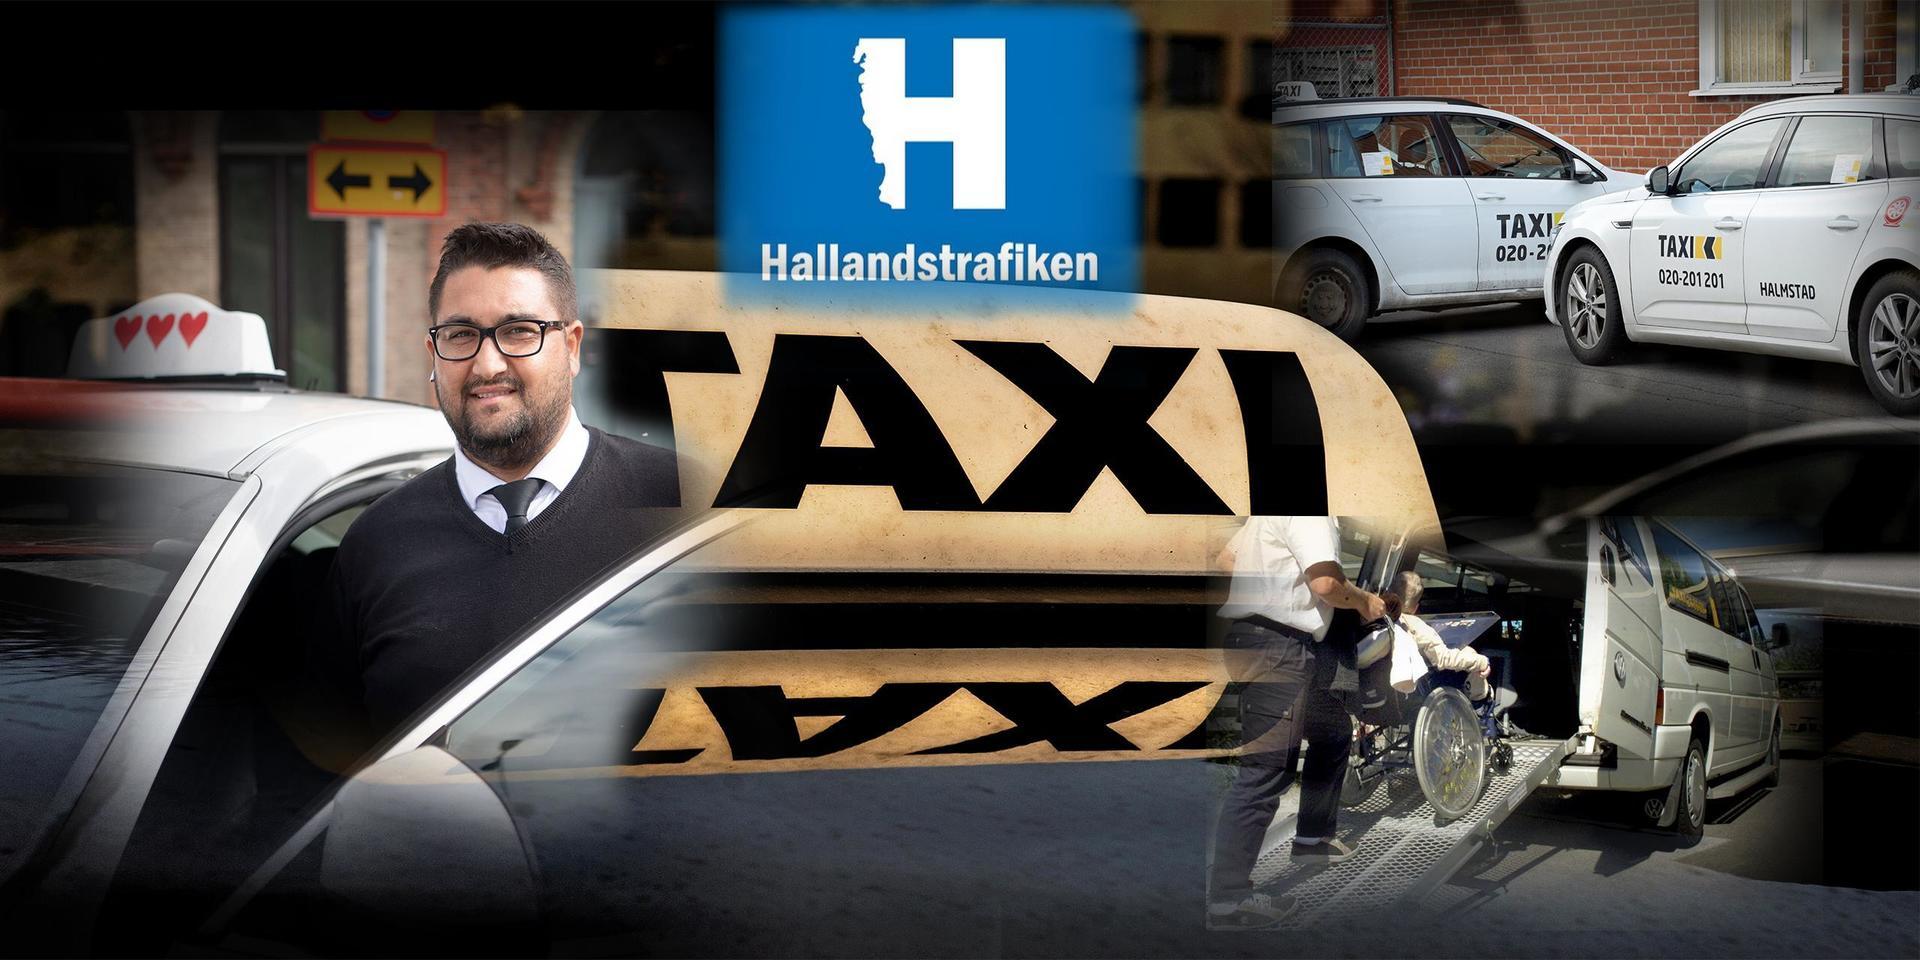 Boban Dragic som driver Taxi Tre hjärtan är kritisk till hur Hallandstrafiken agerar efter att skandalomsusade taxiföretaget K-holm Vård o Omsorg tvingats kasta in handduken.